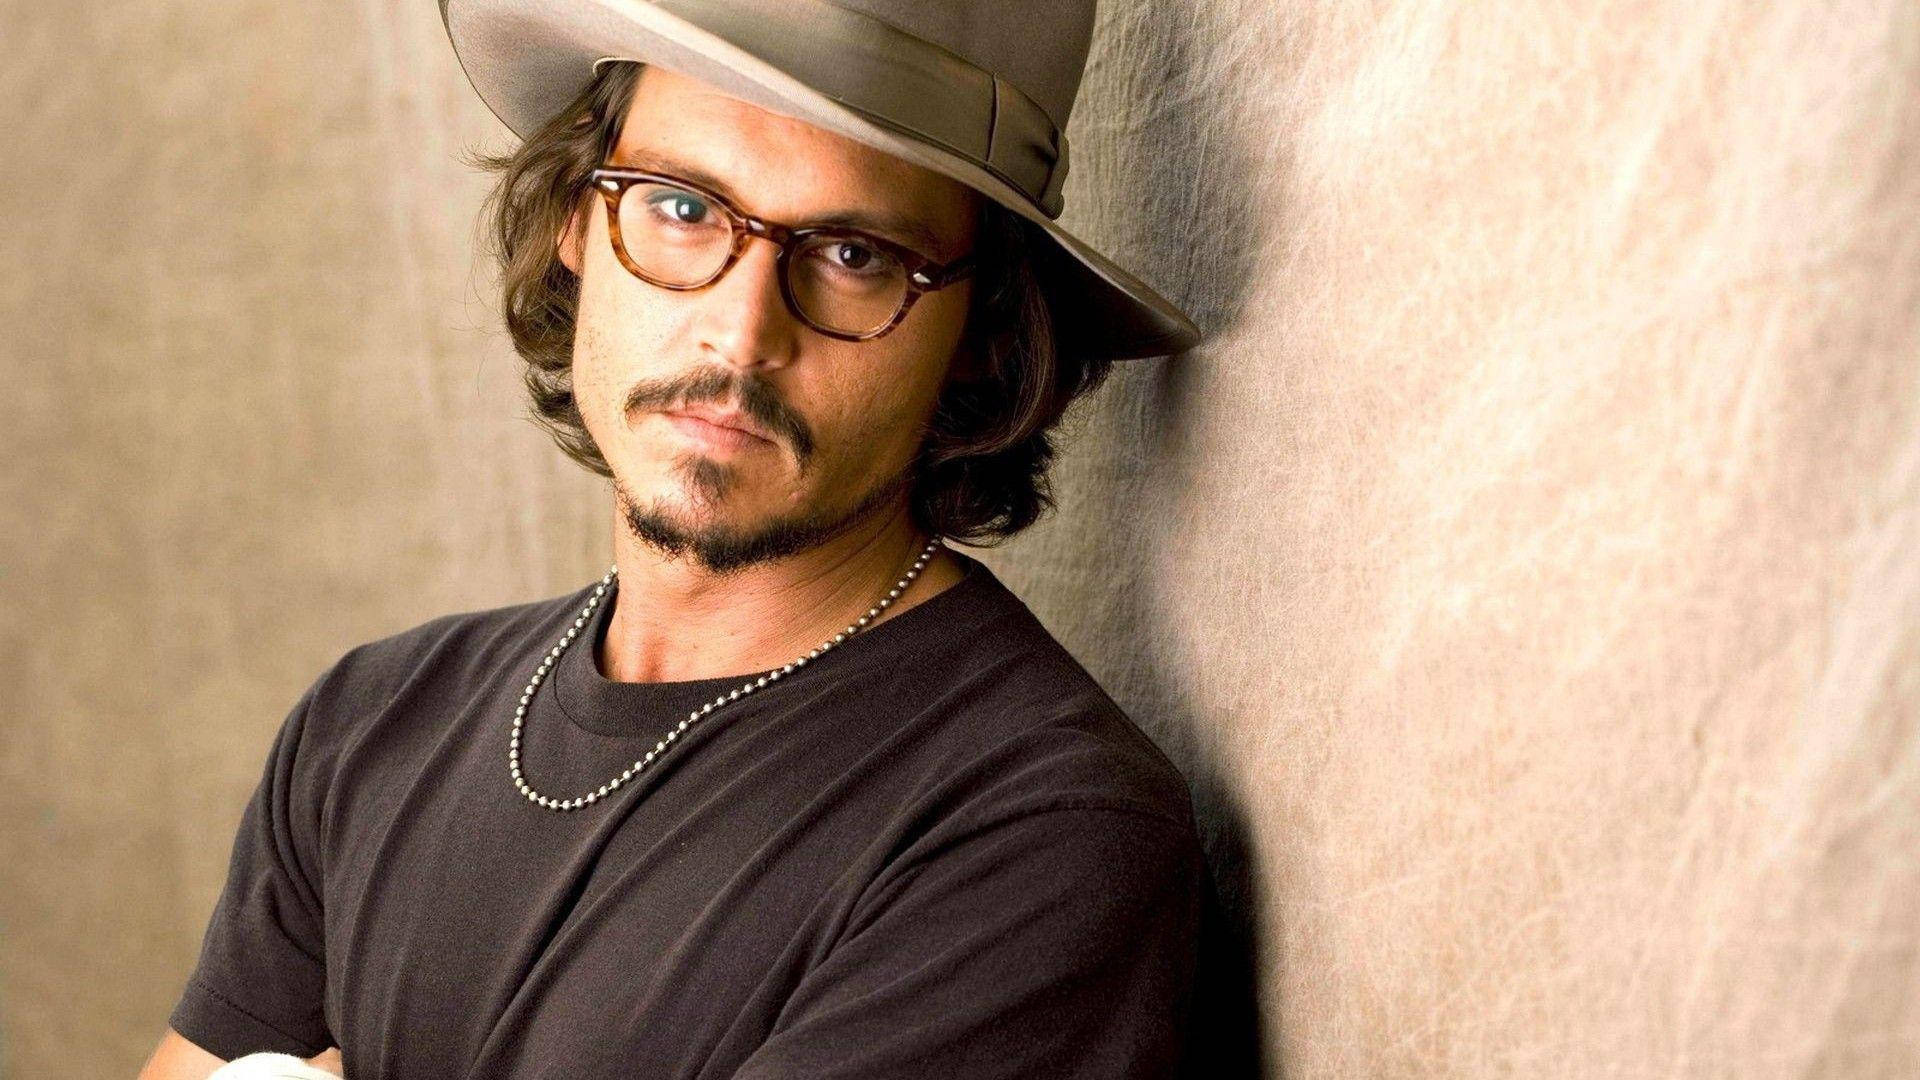 Hot Johnny Depp Poster Wallpaper